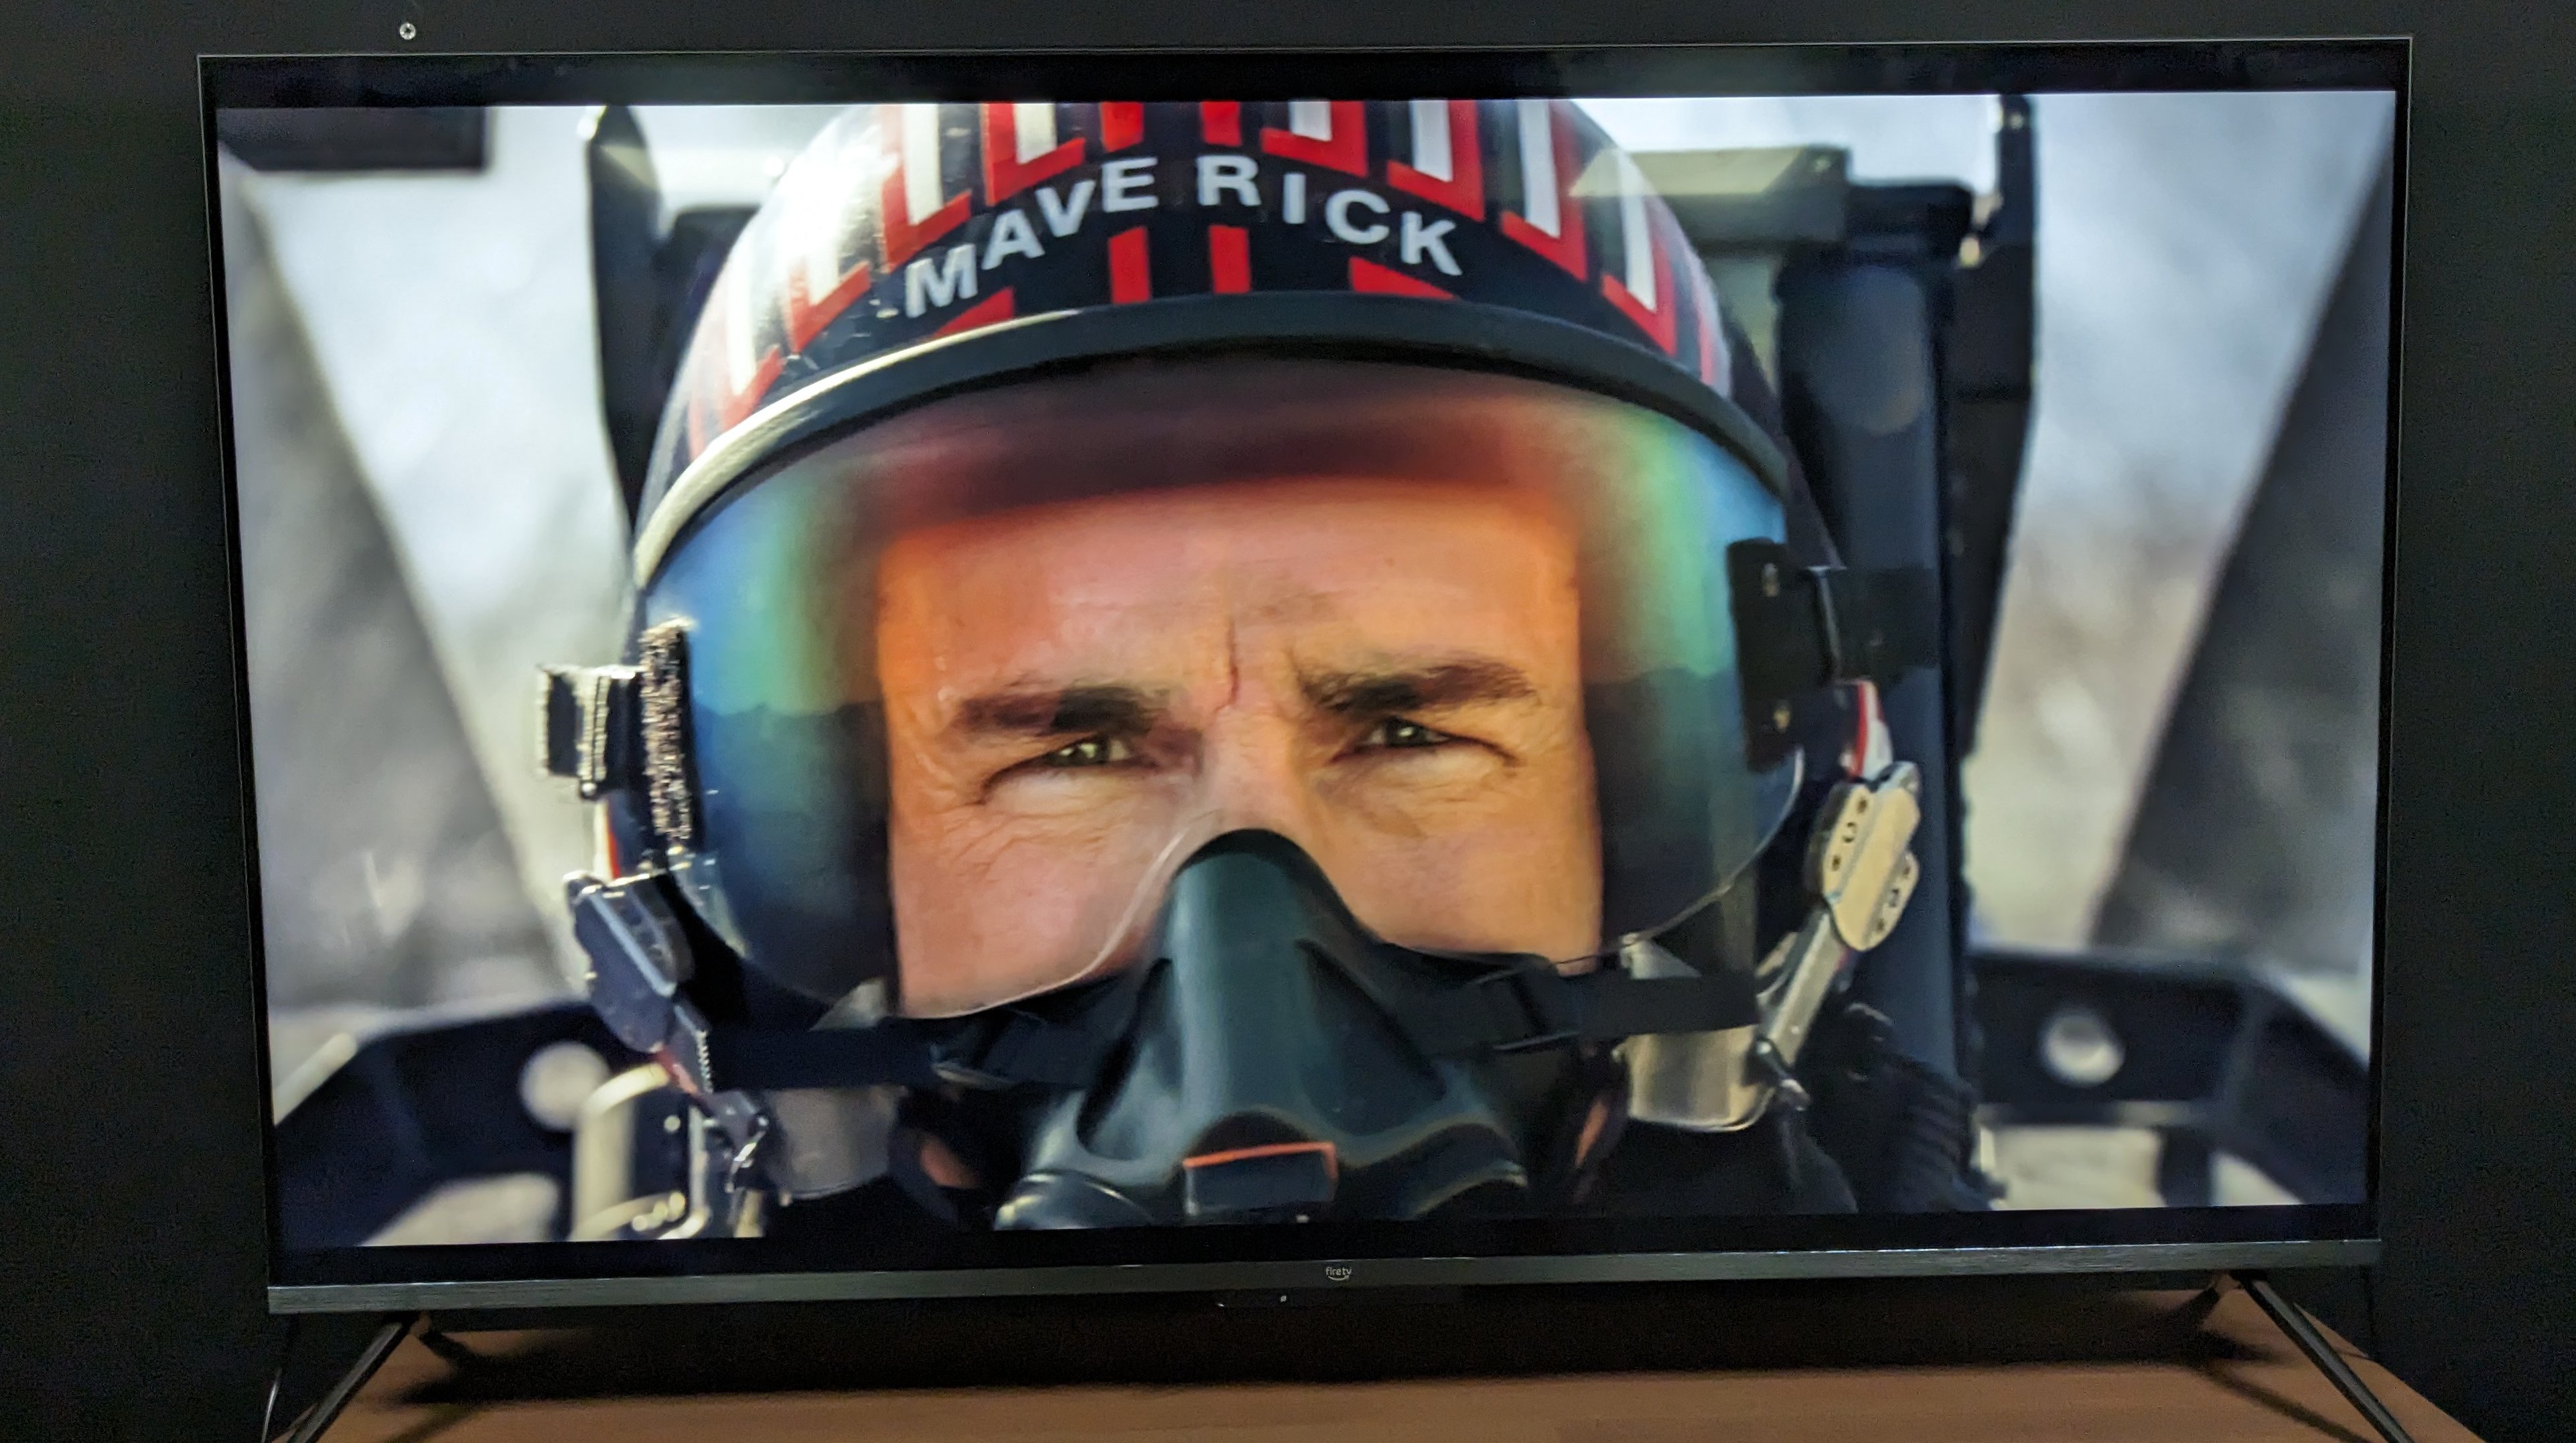 Amazon Omni QLED with Top Gun Maverick on screen